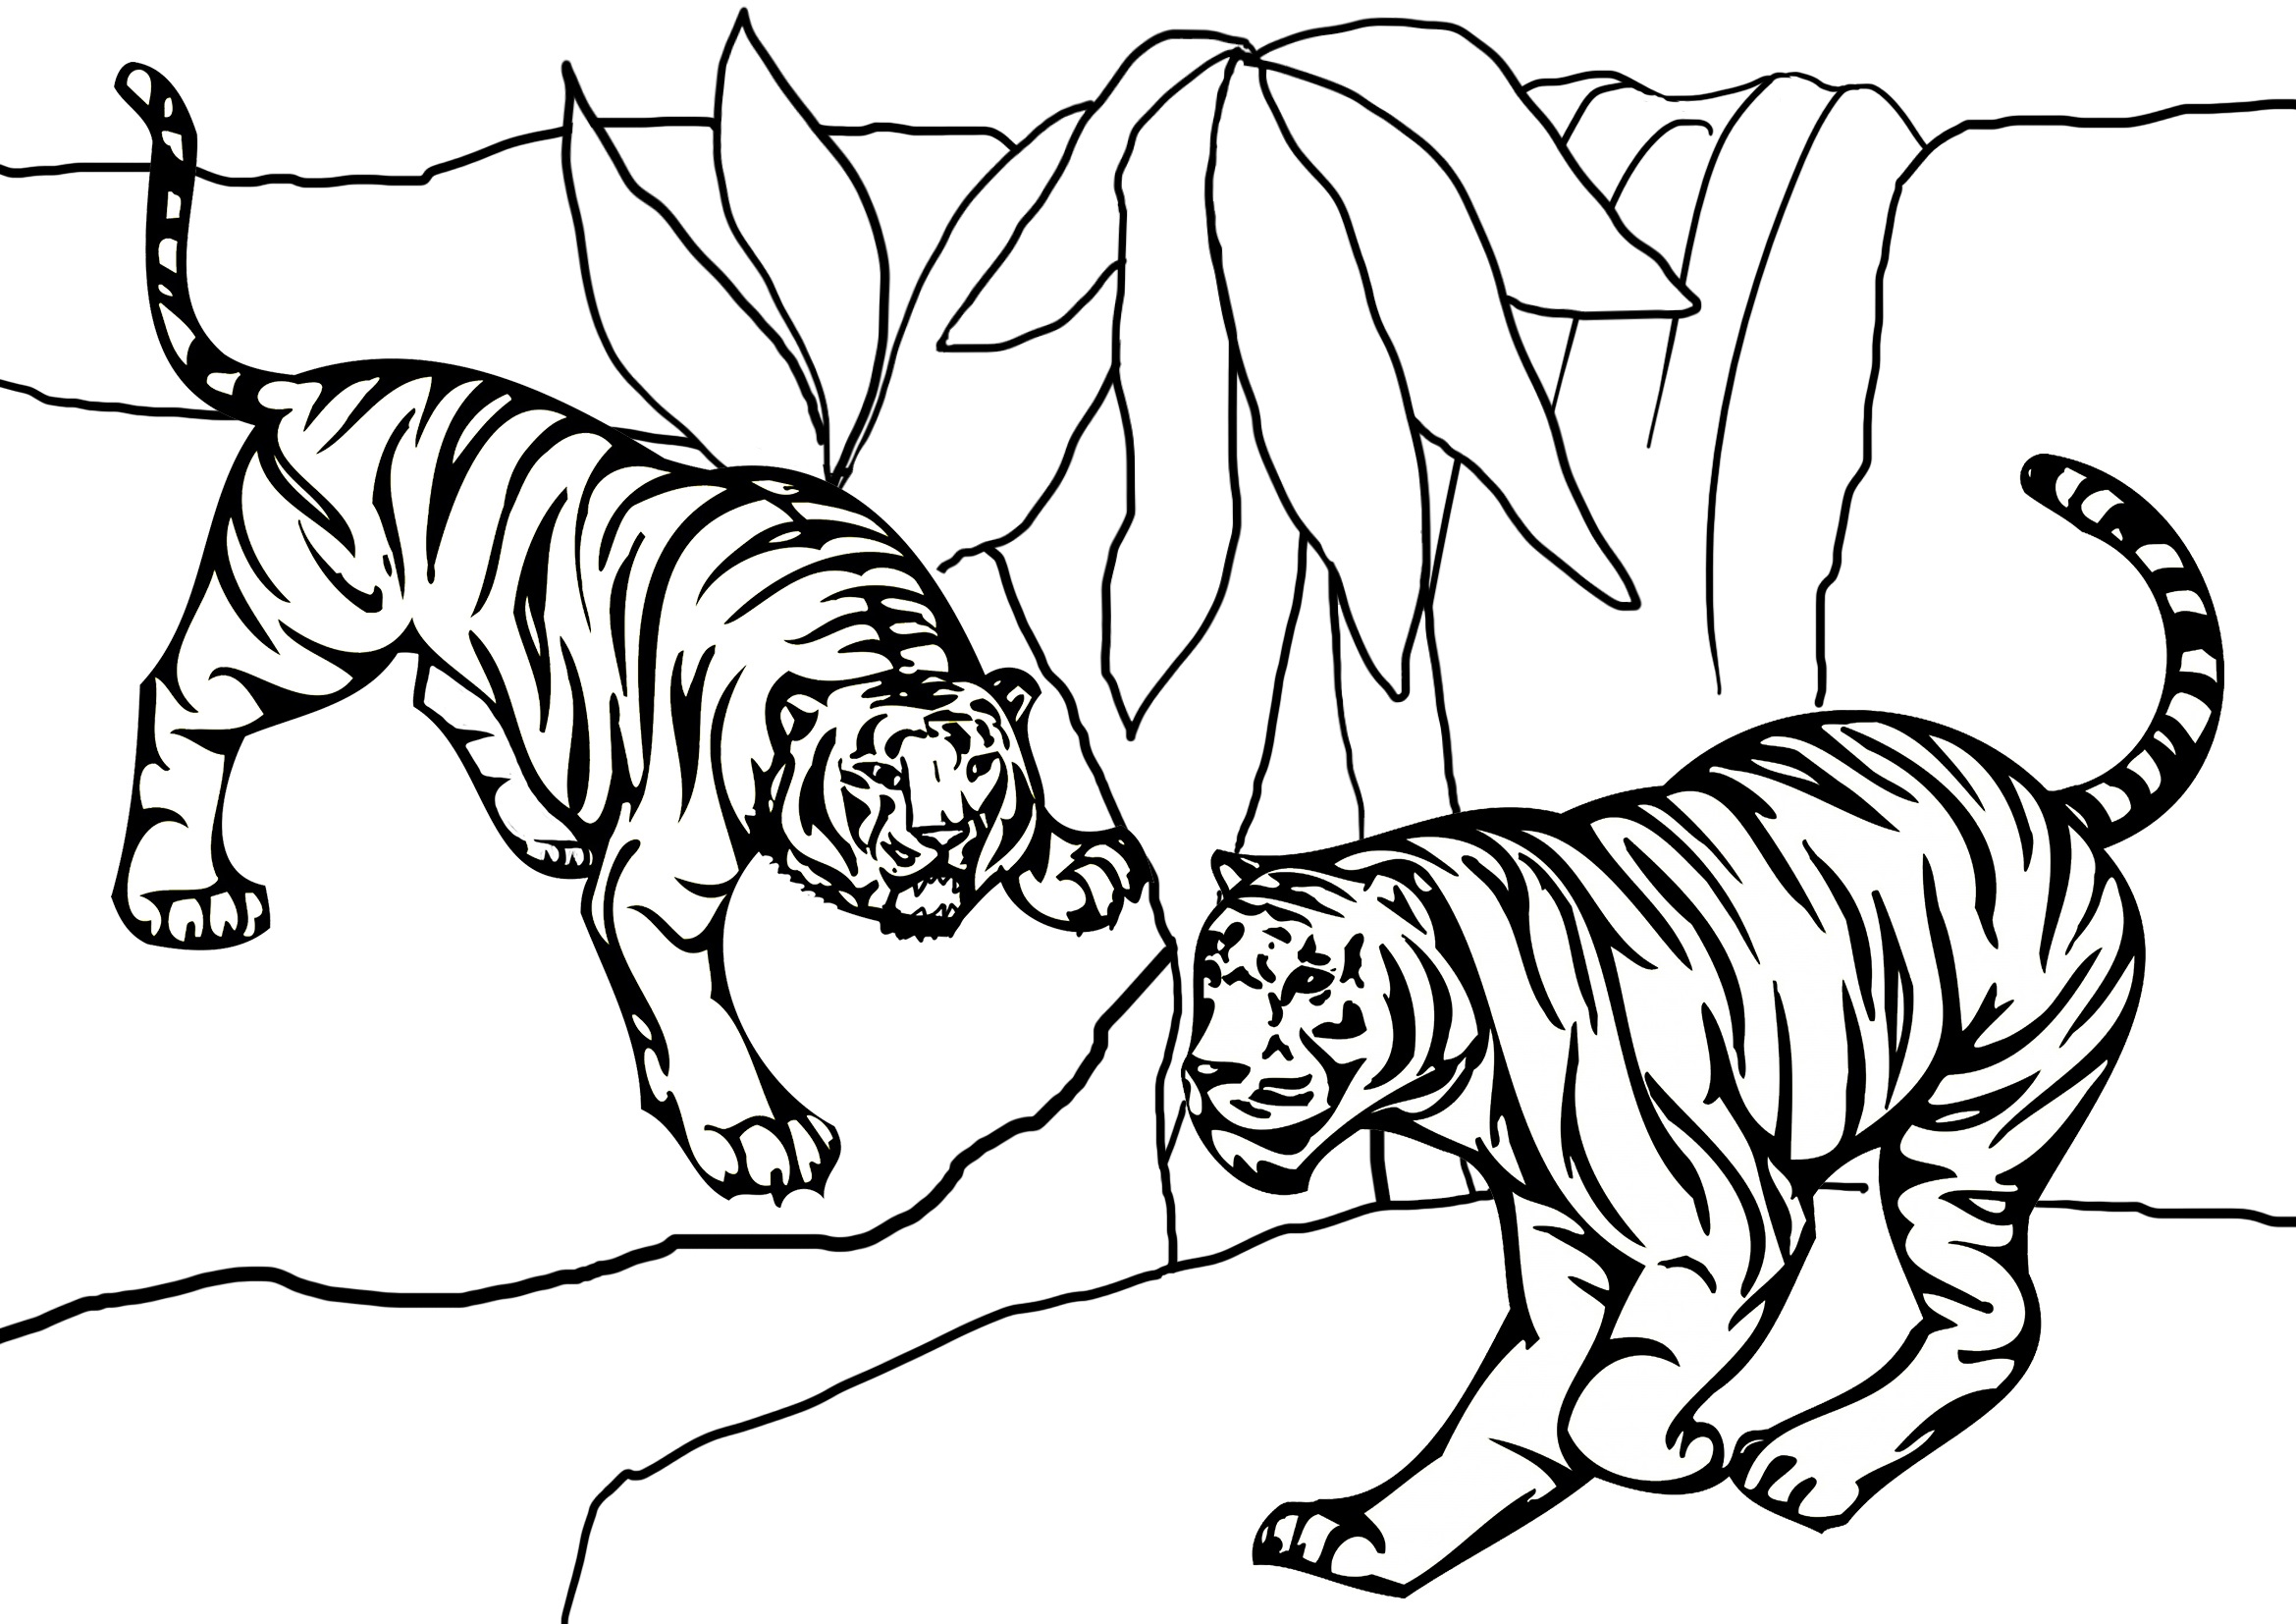 Tygr číslo 14 omalovánka